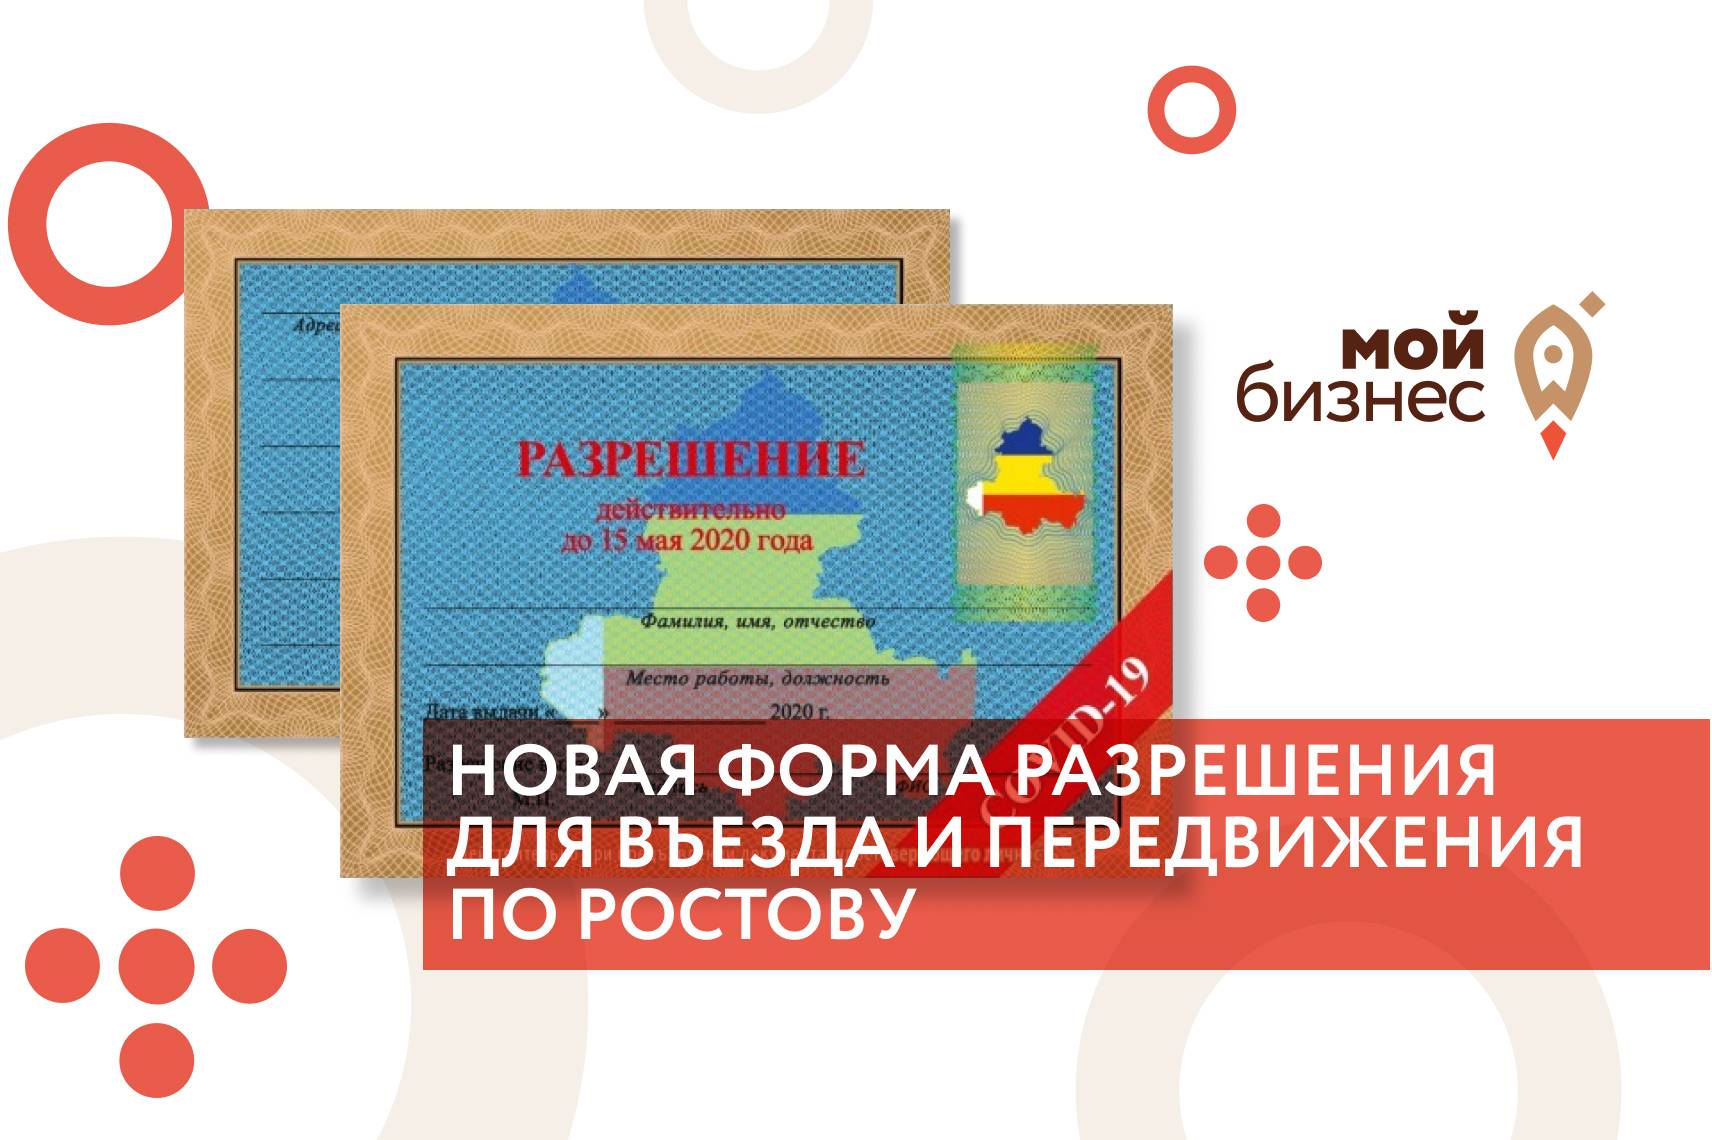 Утверждена новая форма разрешения для въезда и передвижения по Ростову